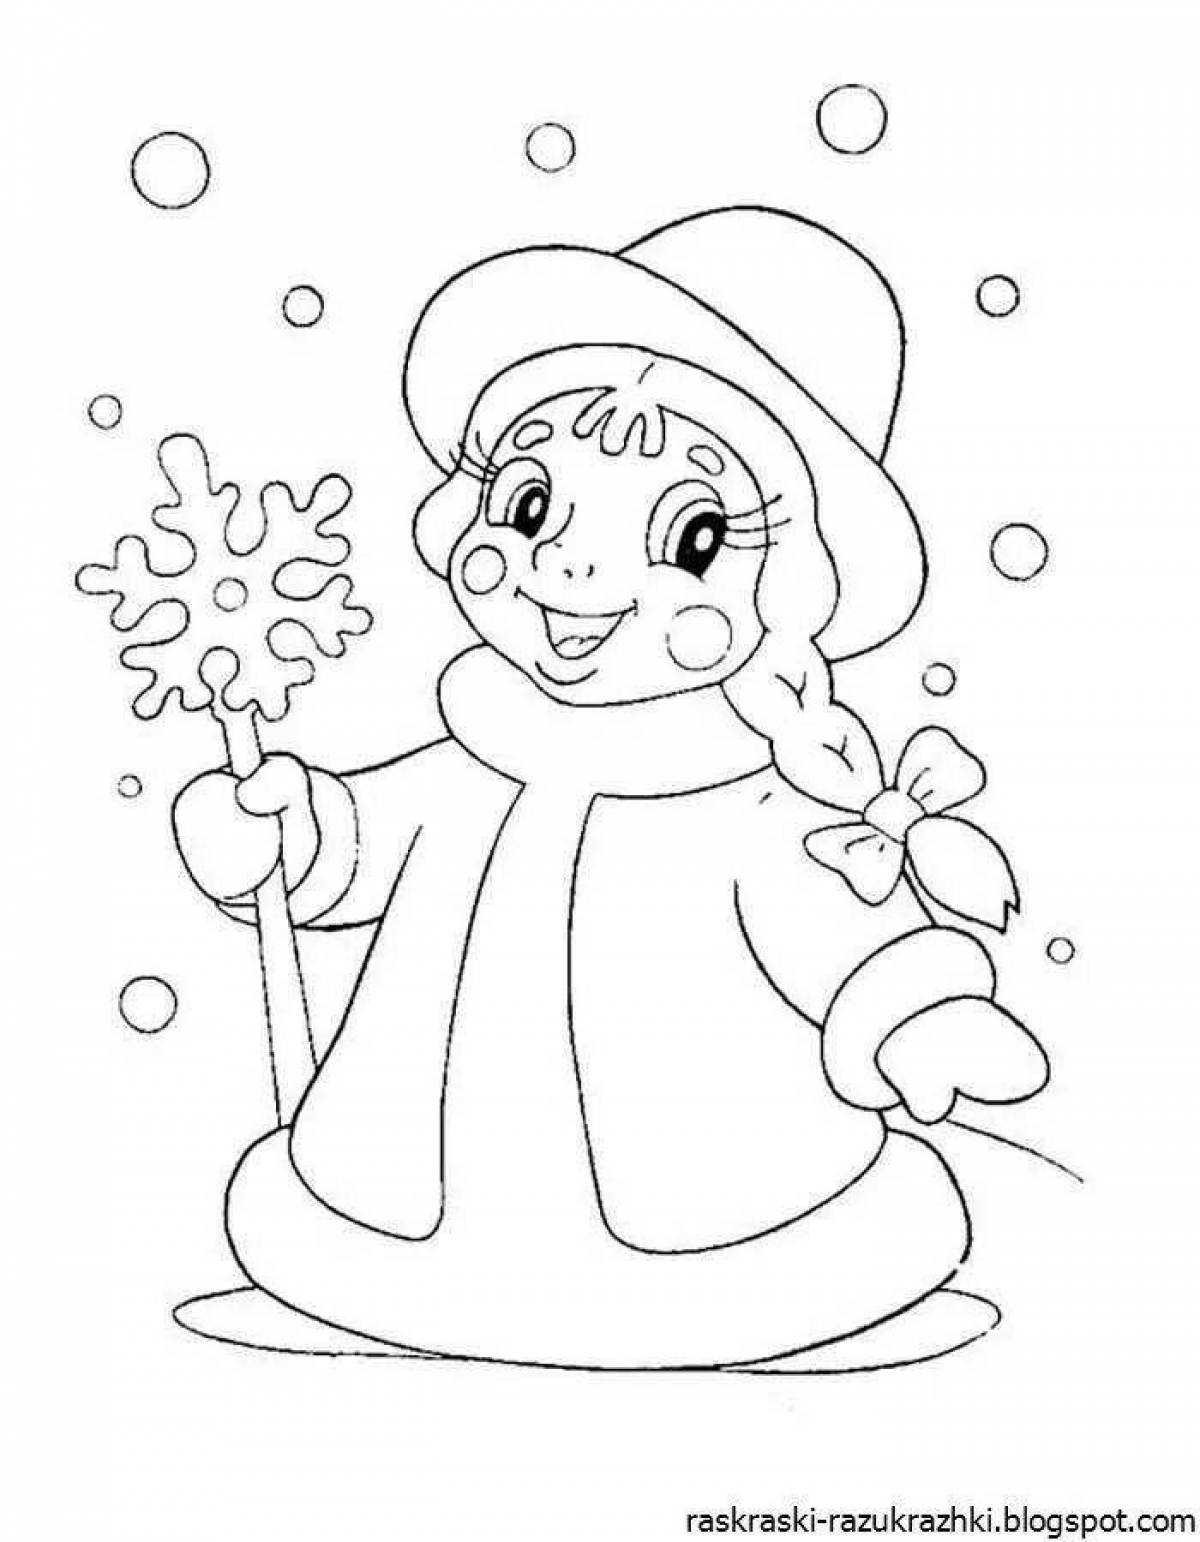 Sparkling snow maiden coloring book